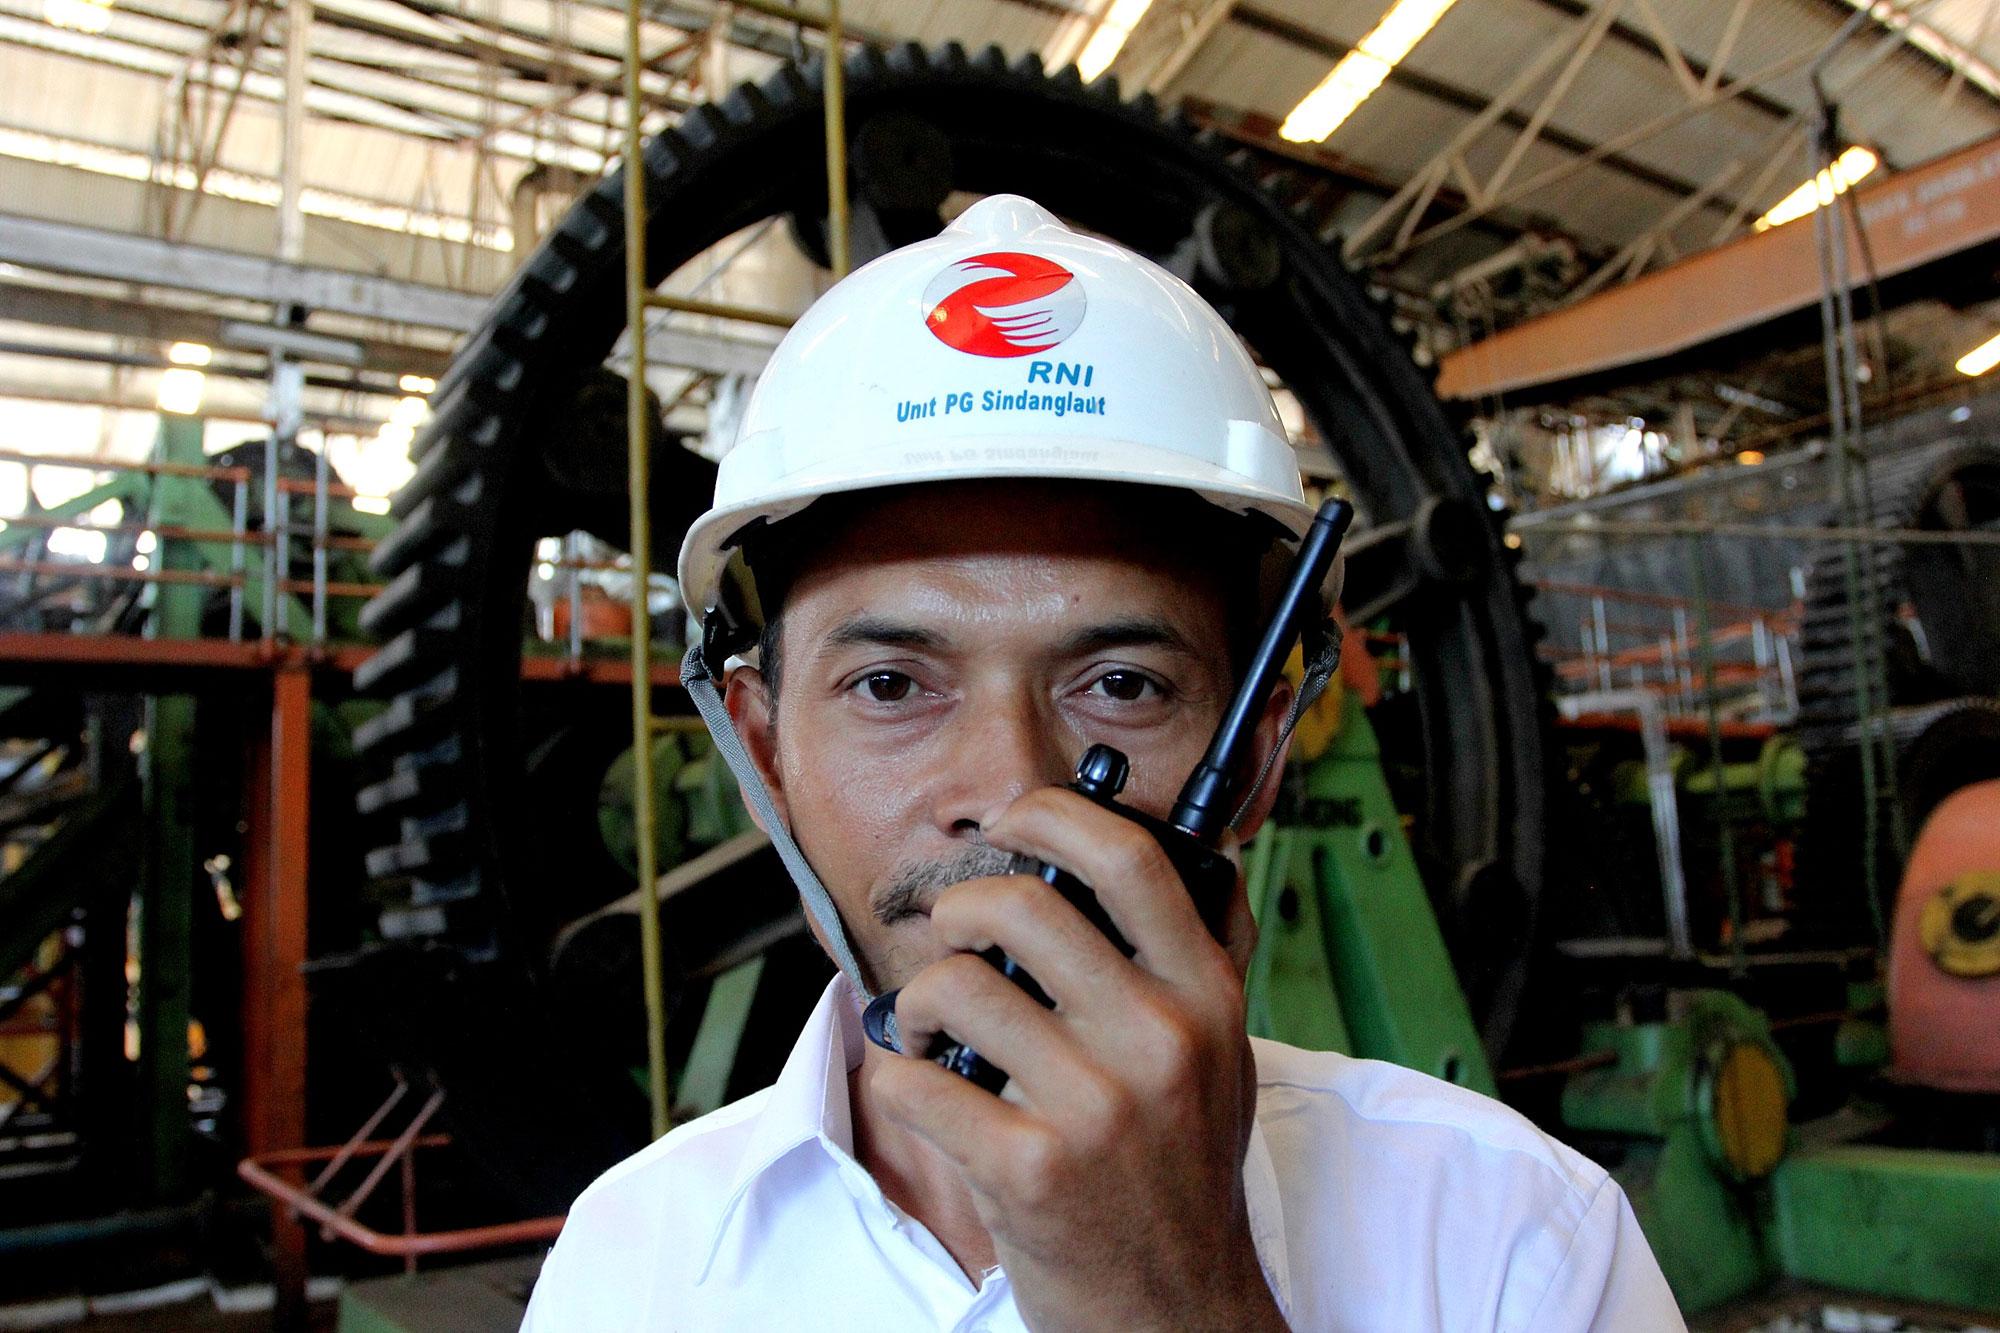 Aktifitas pekerja pabrik gula Sindanglaut berkapasitas giling 12.000 ton cane per day (TCD), di Cirebon, Jawa Barat, (16/10). Secara korporasi PG Rajawali II sampai dengan saat ini sudah memproduksi hampir sekitar 90.000 ton gula, naik 16 persen dibanding